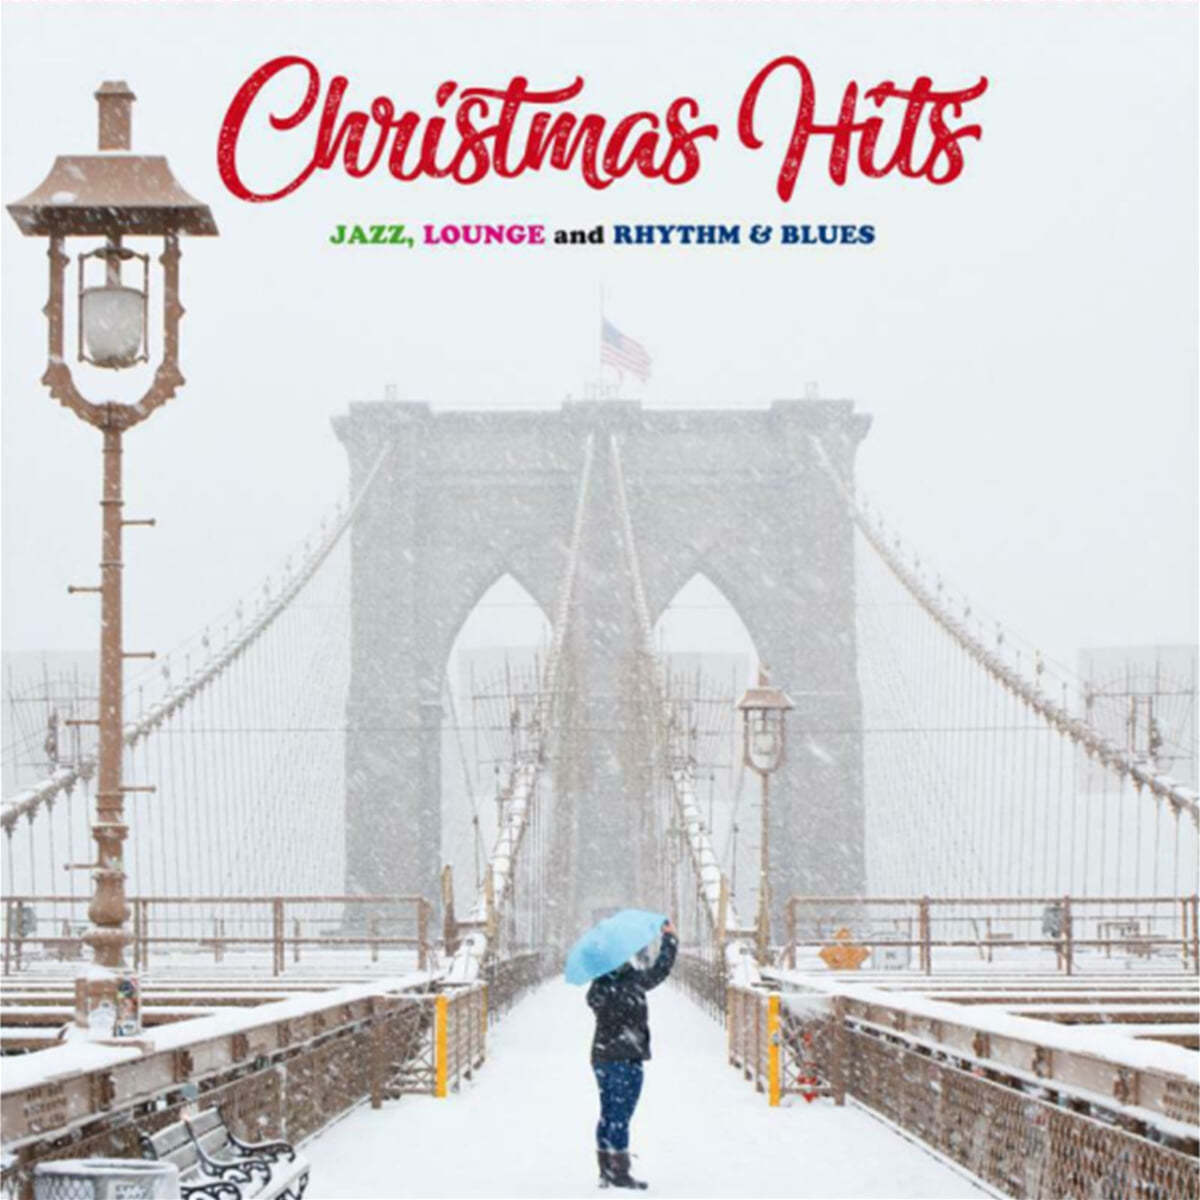 크리스마스 히트곡 모음집 - 재즈, 라운지 뮤직, 리듬 앤 블루스 (Christmas Hits: Jazz Lounge & Rhythm & Blues) [화이트 컬러 LP]